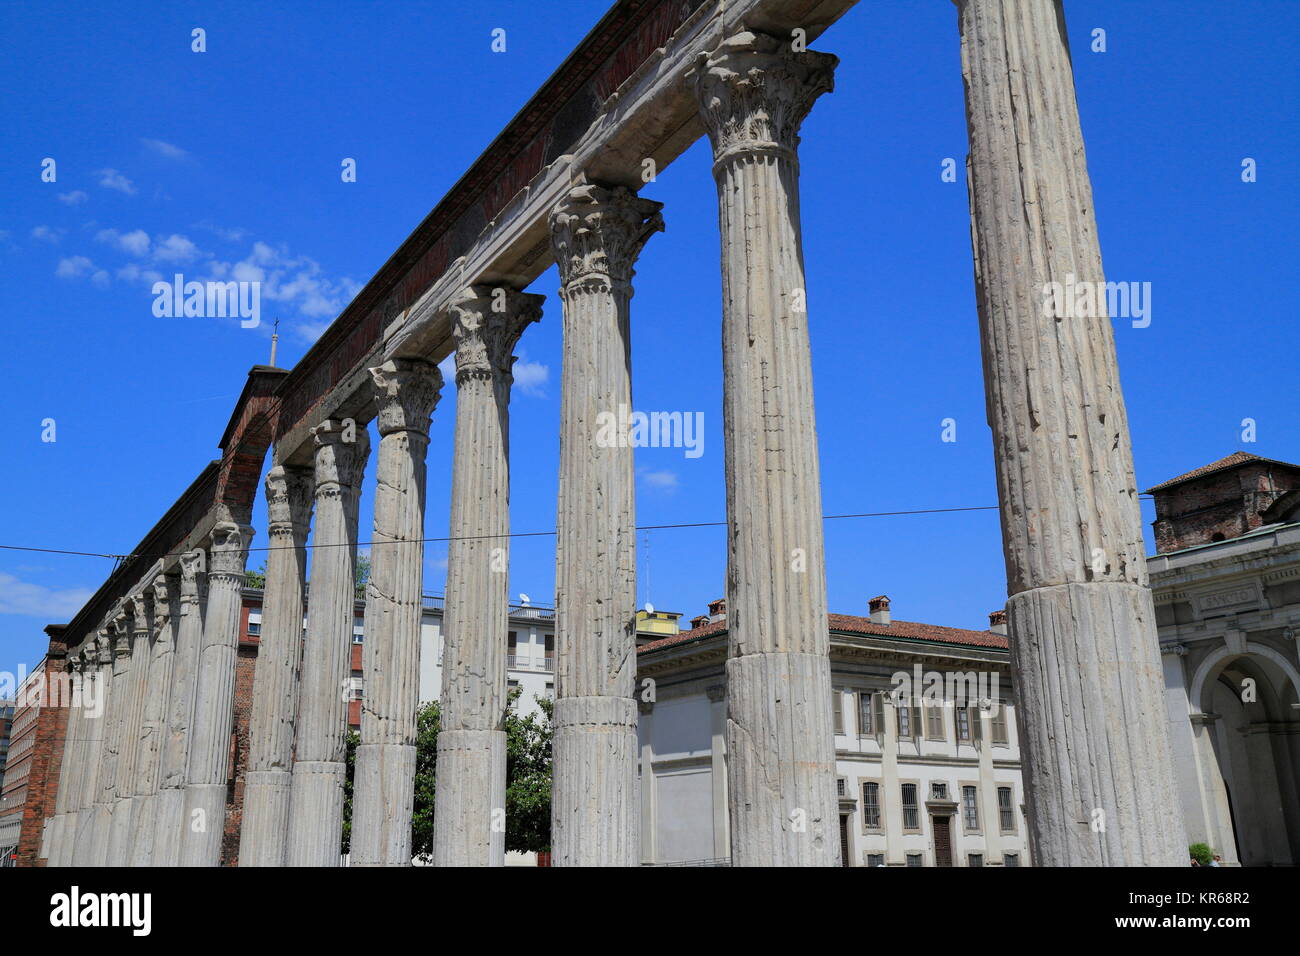 colonne di san lorenzo - st lawrence columns Stock Photo